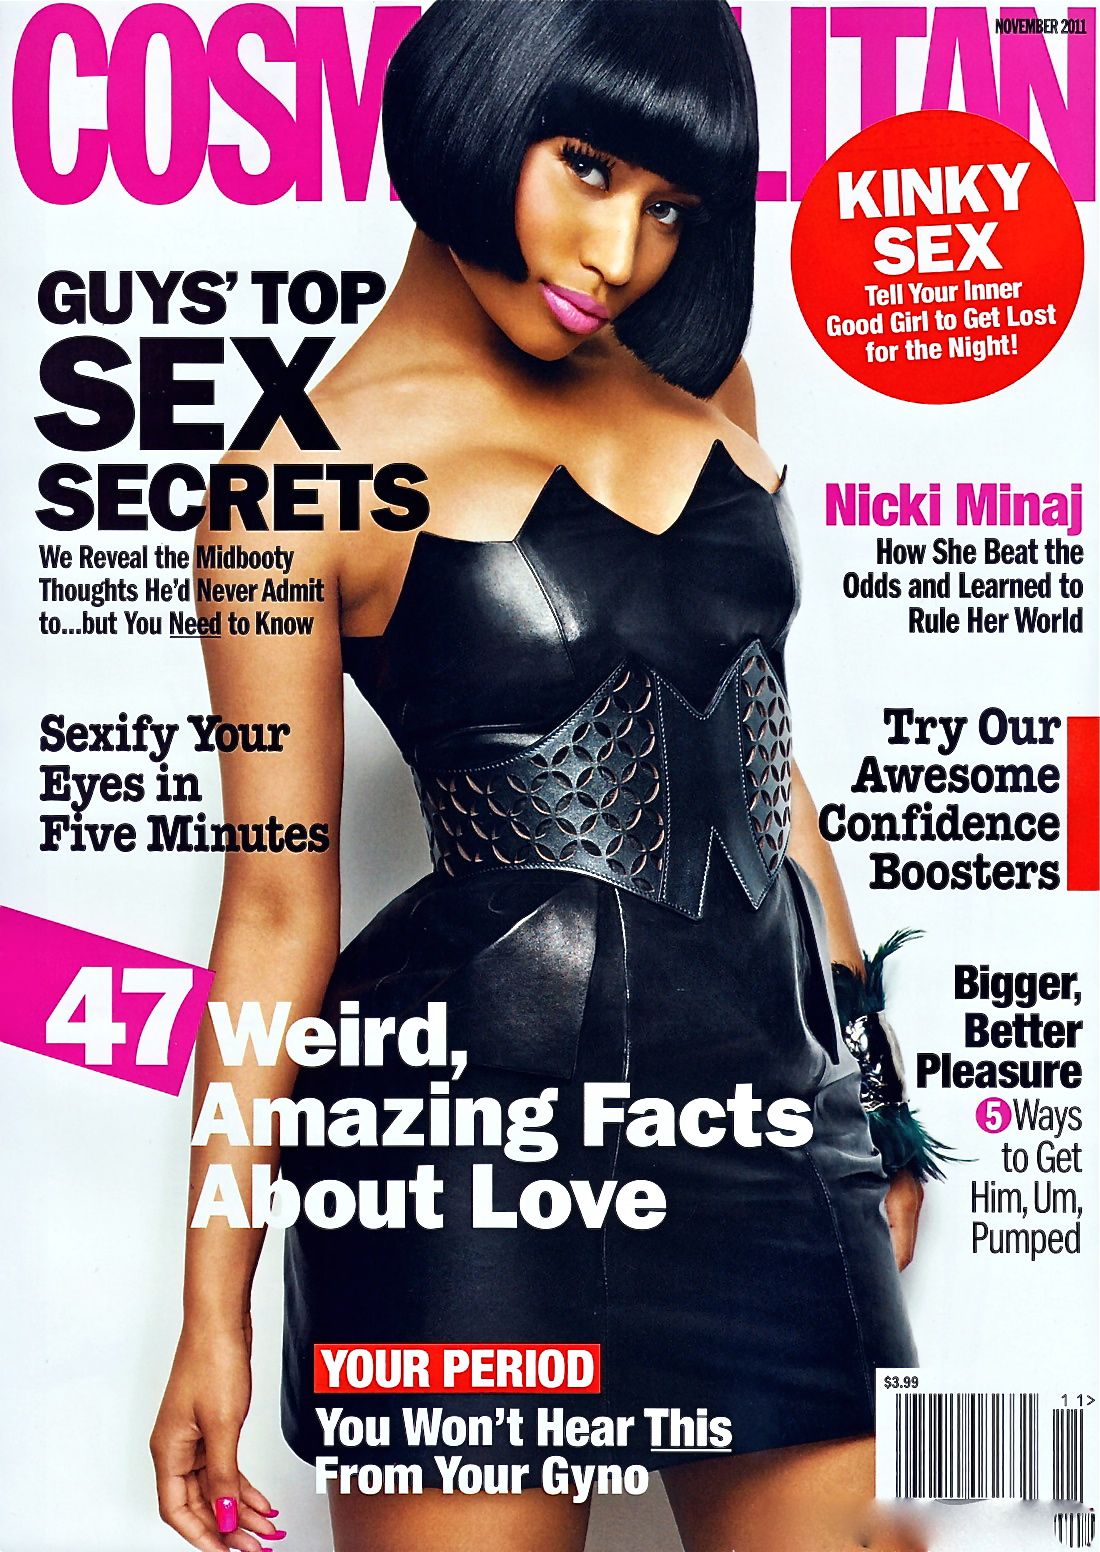 http://3.bp.blogspot.com/-jCvDl_yBv50/Tu3rx0D_U9I/AAAAAAAABMM/MxGLsgg9XcM/s1600/Nicki+Minaj+on+Cosmopolitan+Magazine+US+November+2011.jpg